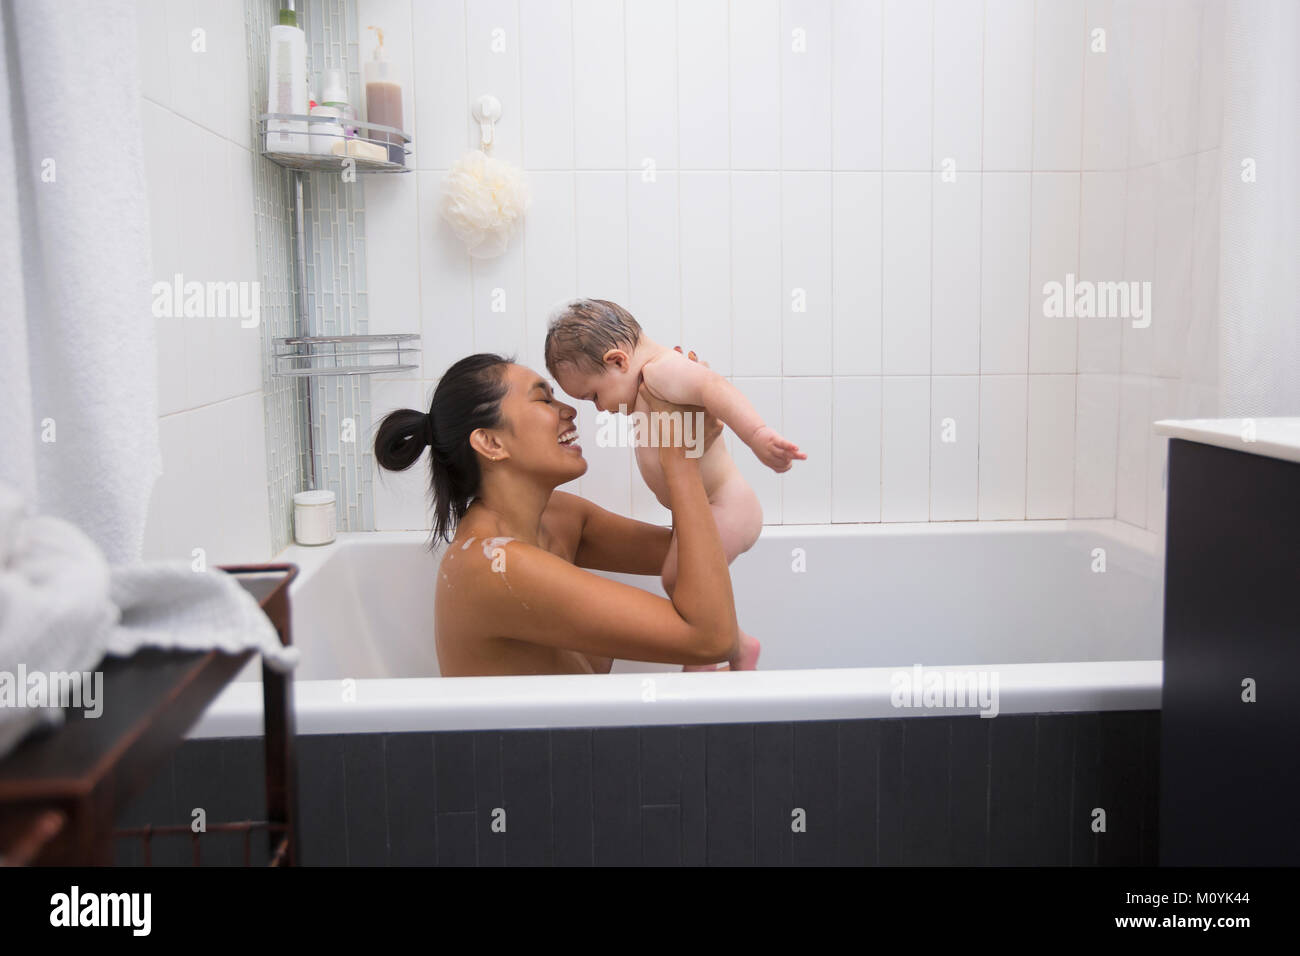 Mère assis dans une baignoire holding baby son Banque D'Images